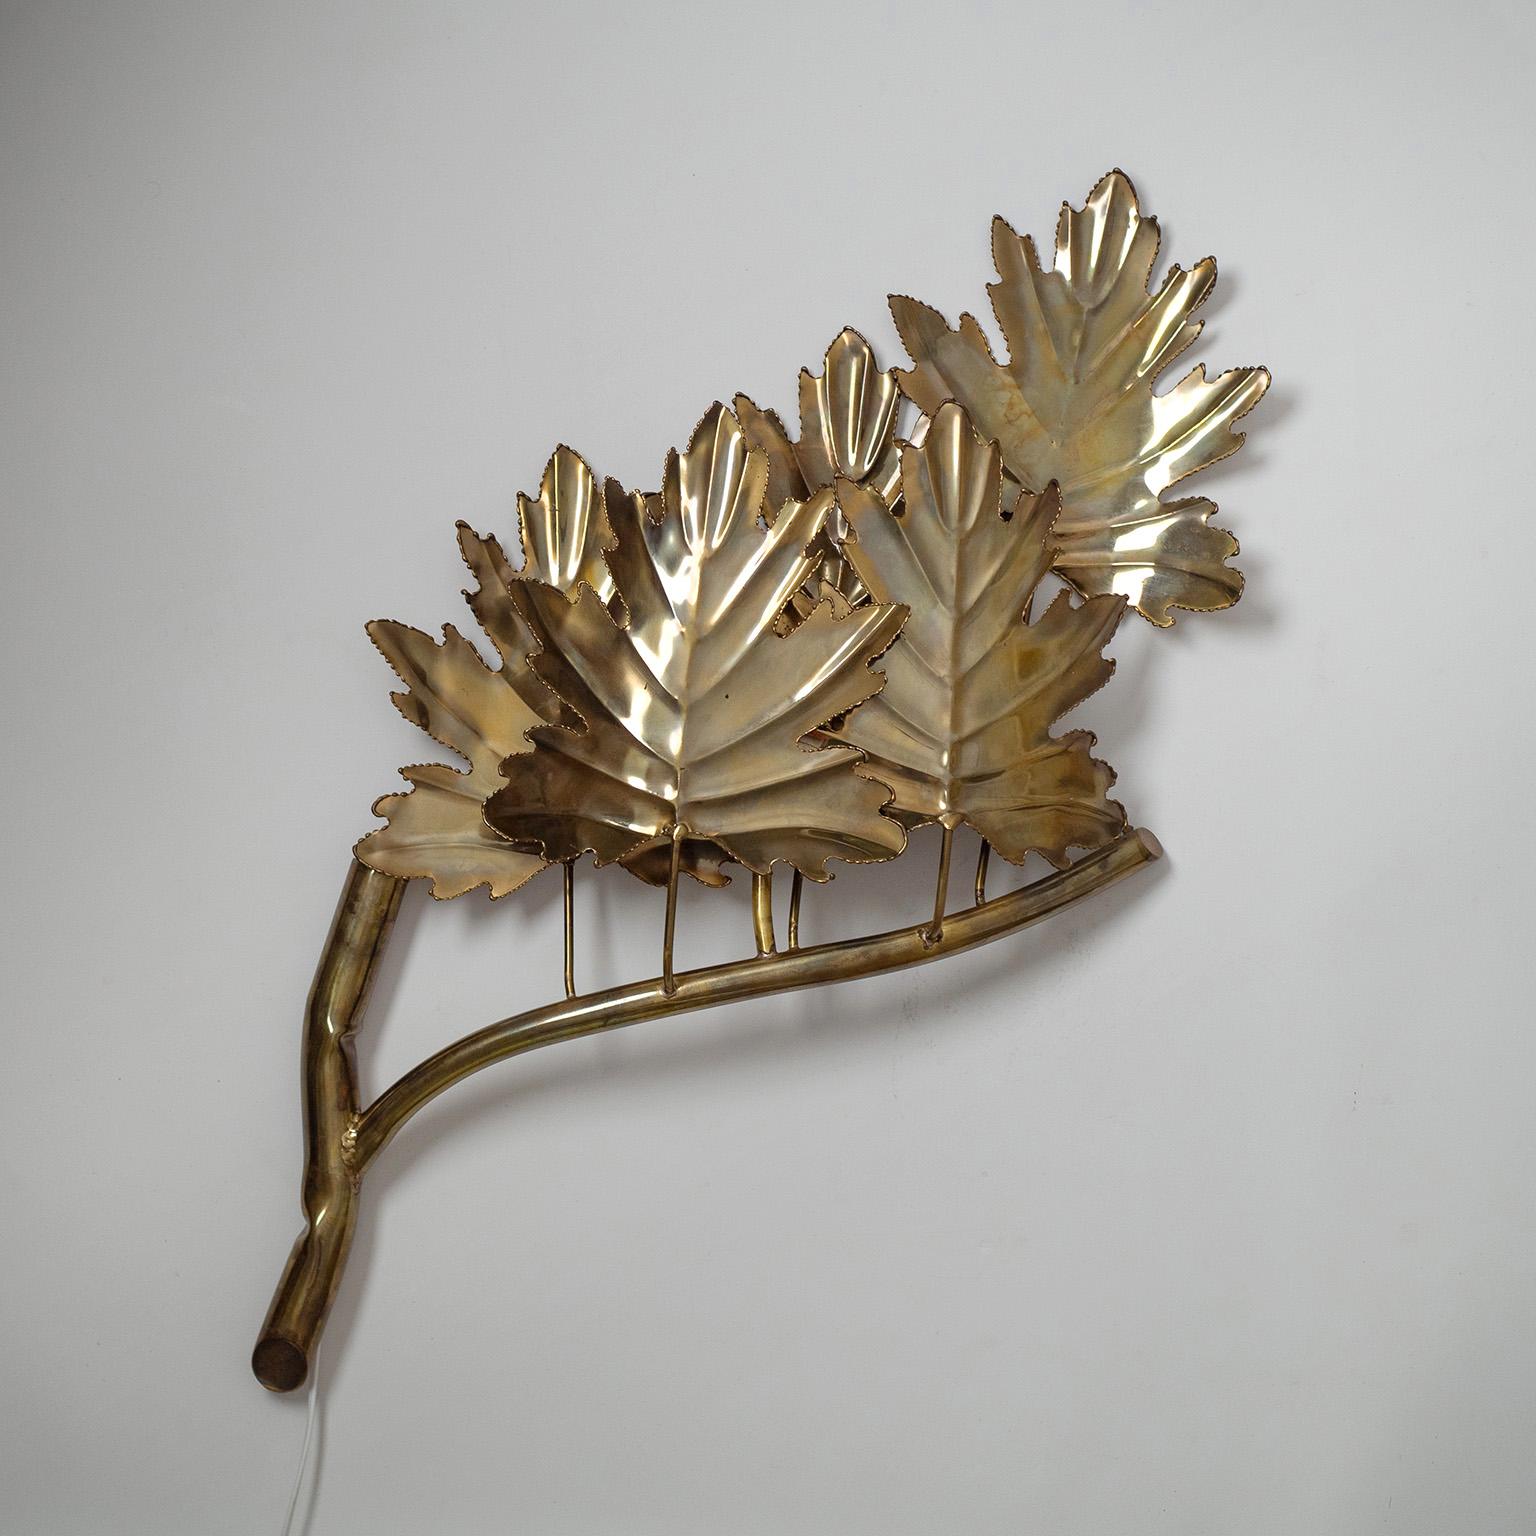 Applique française unique et surdimensionnée des années 1970-1980, très probablement de Jacques Duval-Brasseur. Pièce très sculpturale en forme de branche d'érable stylisée avec des feuilles. Une douille E27 en laiton avec un nouveau